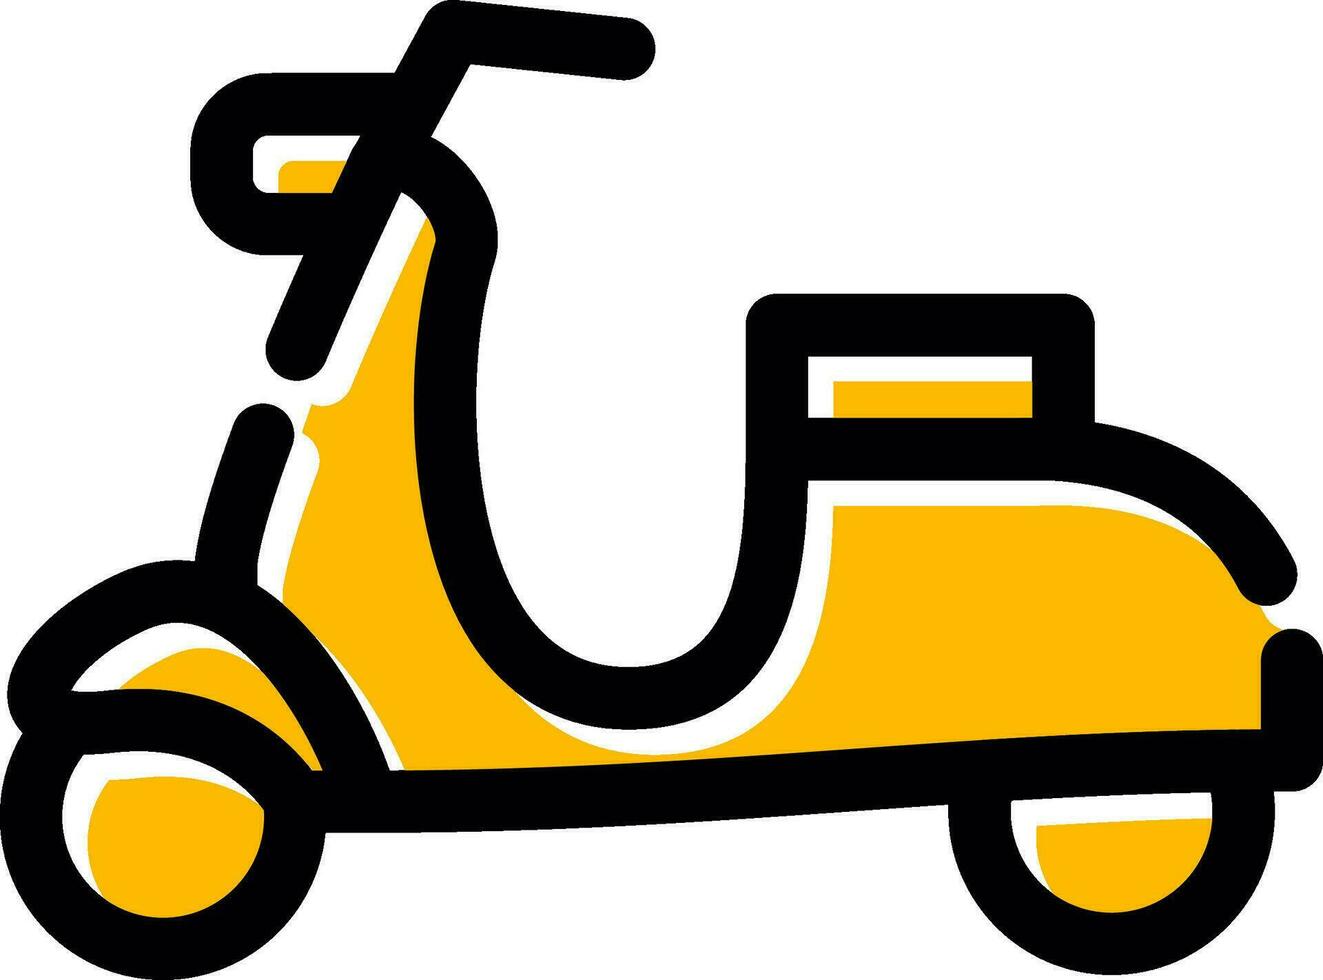 design de ícone criativo de scooter vetor